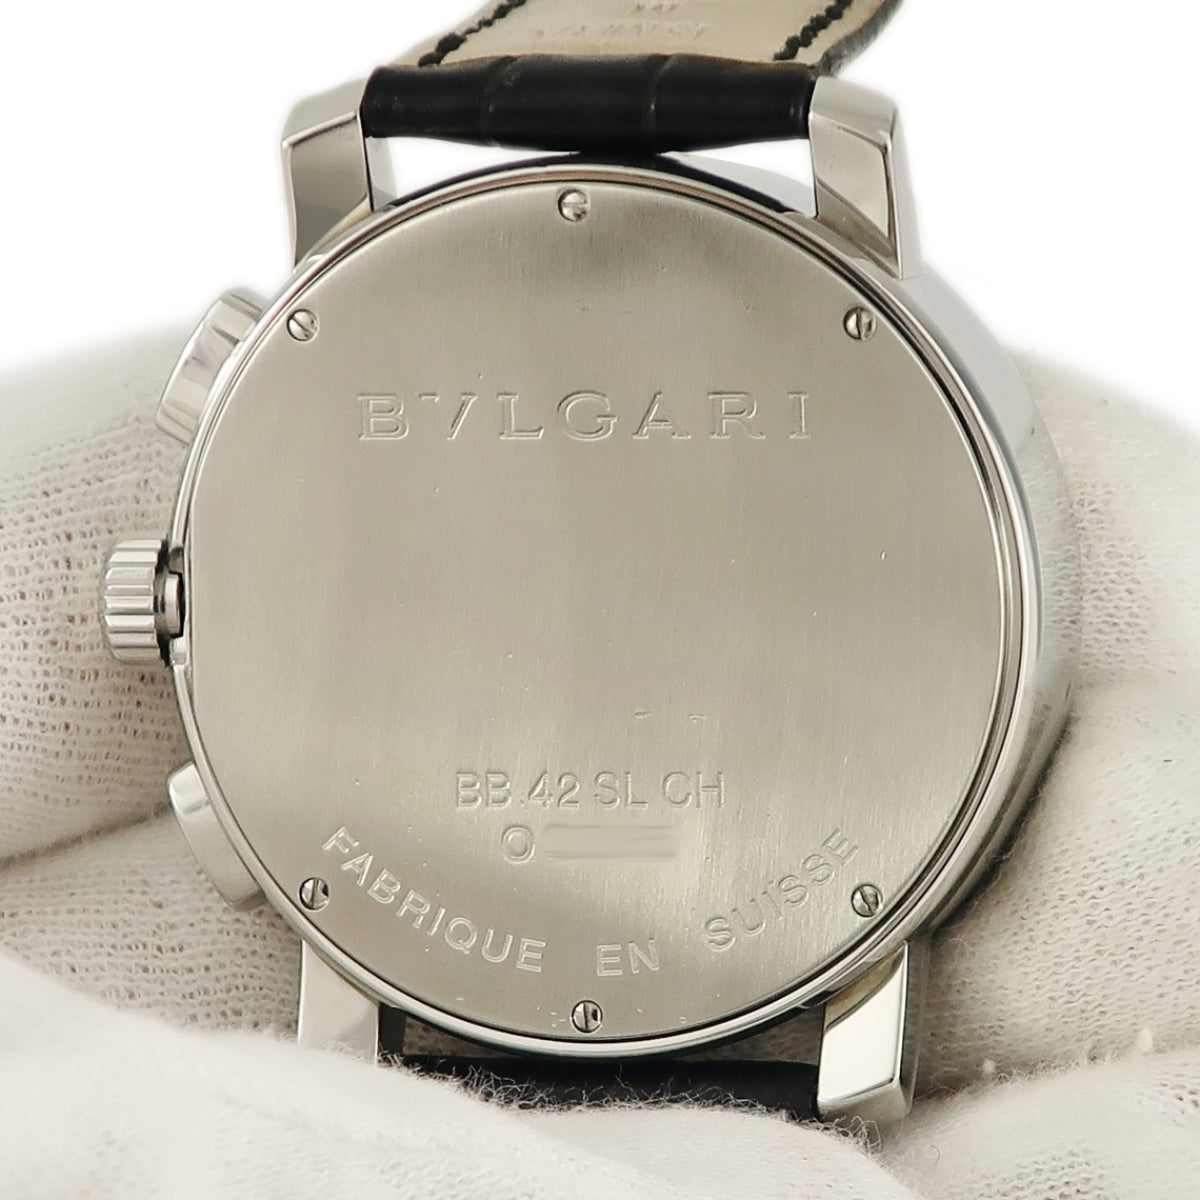 ブルガリ BVLGARI ブルガリブルガリ クロノグラフ BB42SLCH 自動巻き メンズ ギヨシェ バー アラビア